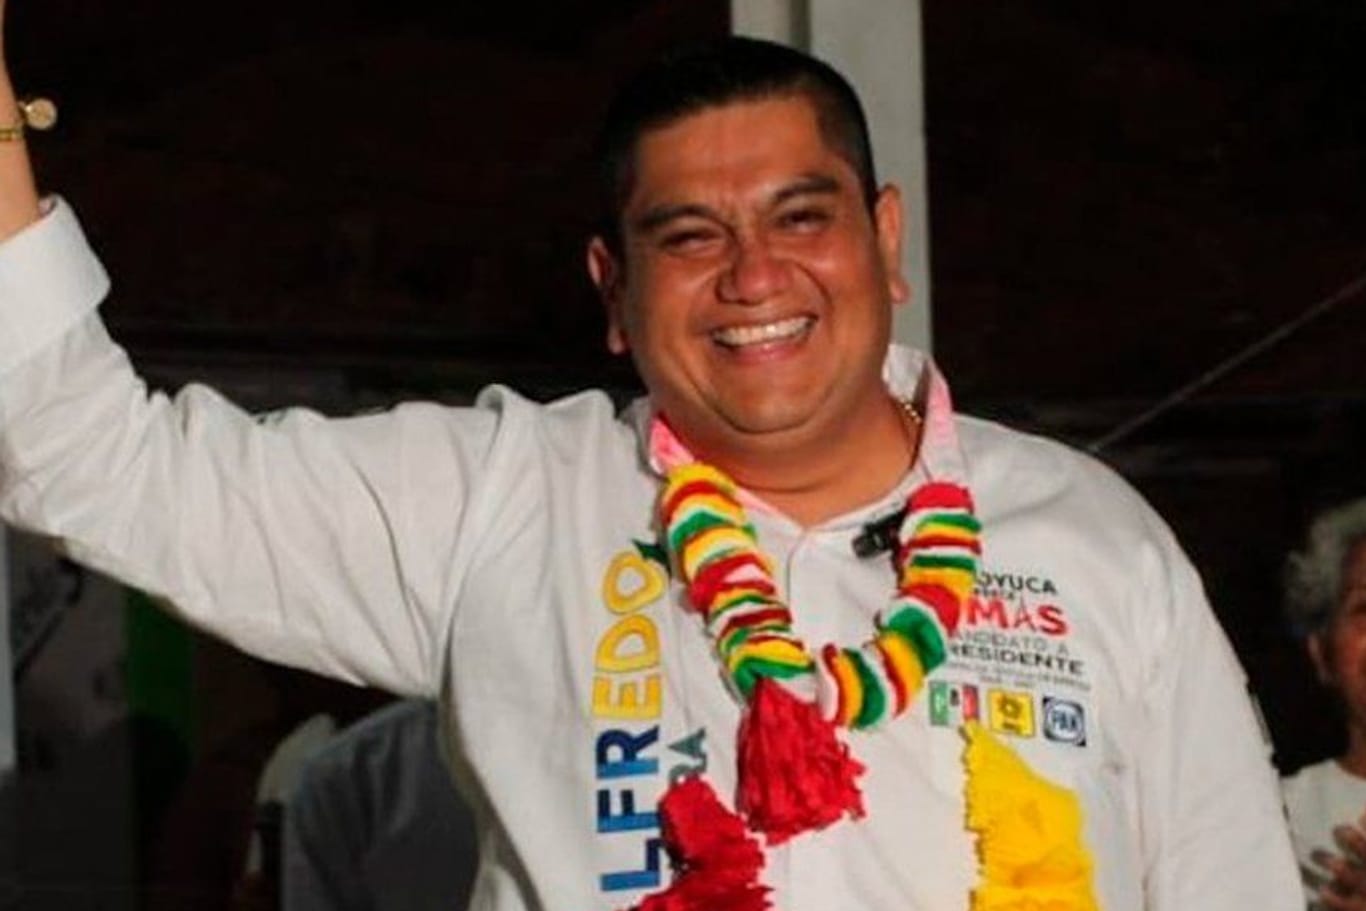 Bürgermeisterkandidat José Alfredo Cabrera bei einem Wahlkampfauftritt. Der Mexikaner wurde am Mittwoch erschossen.